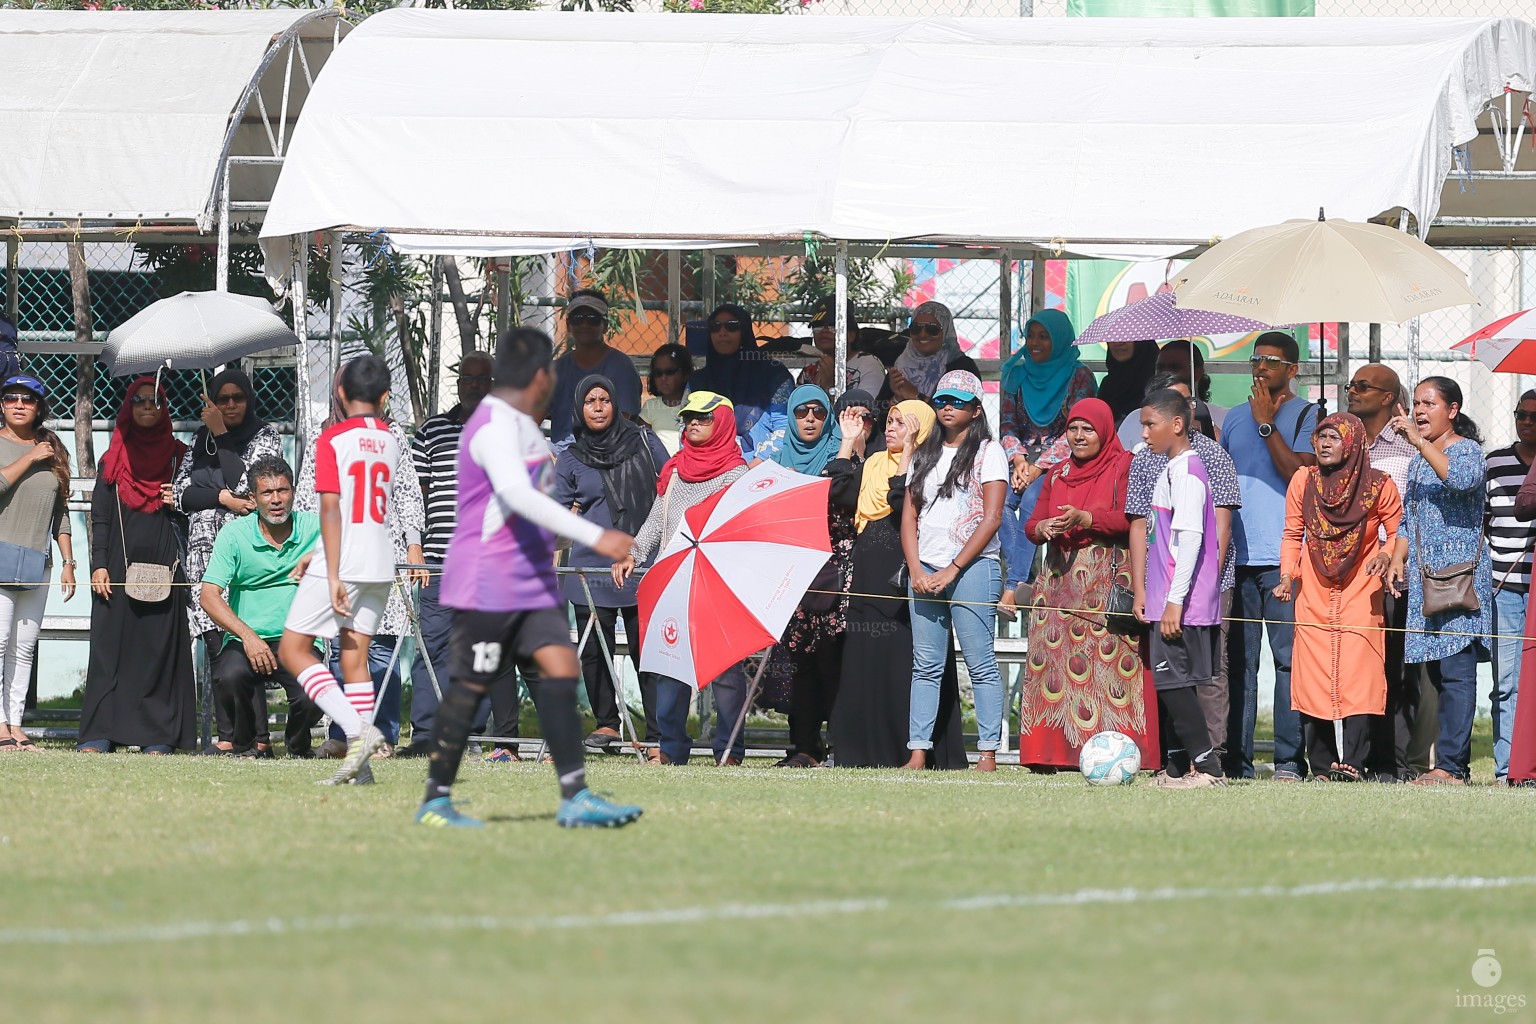 Milo Inter-school U14 Football -Iskandhar School vs Hiriya School